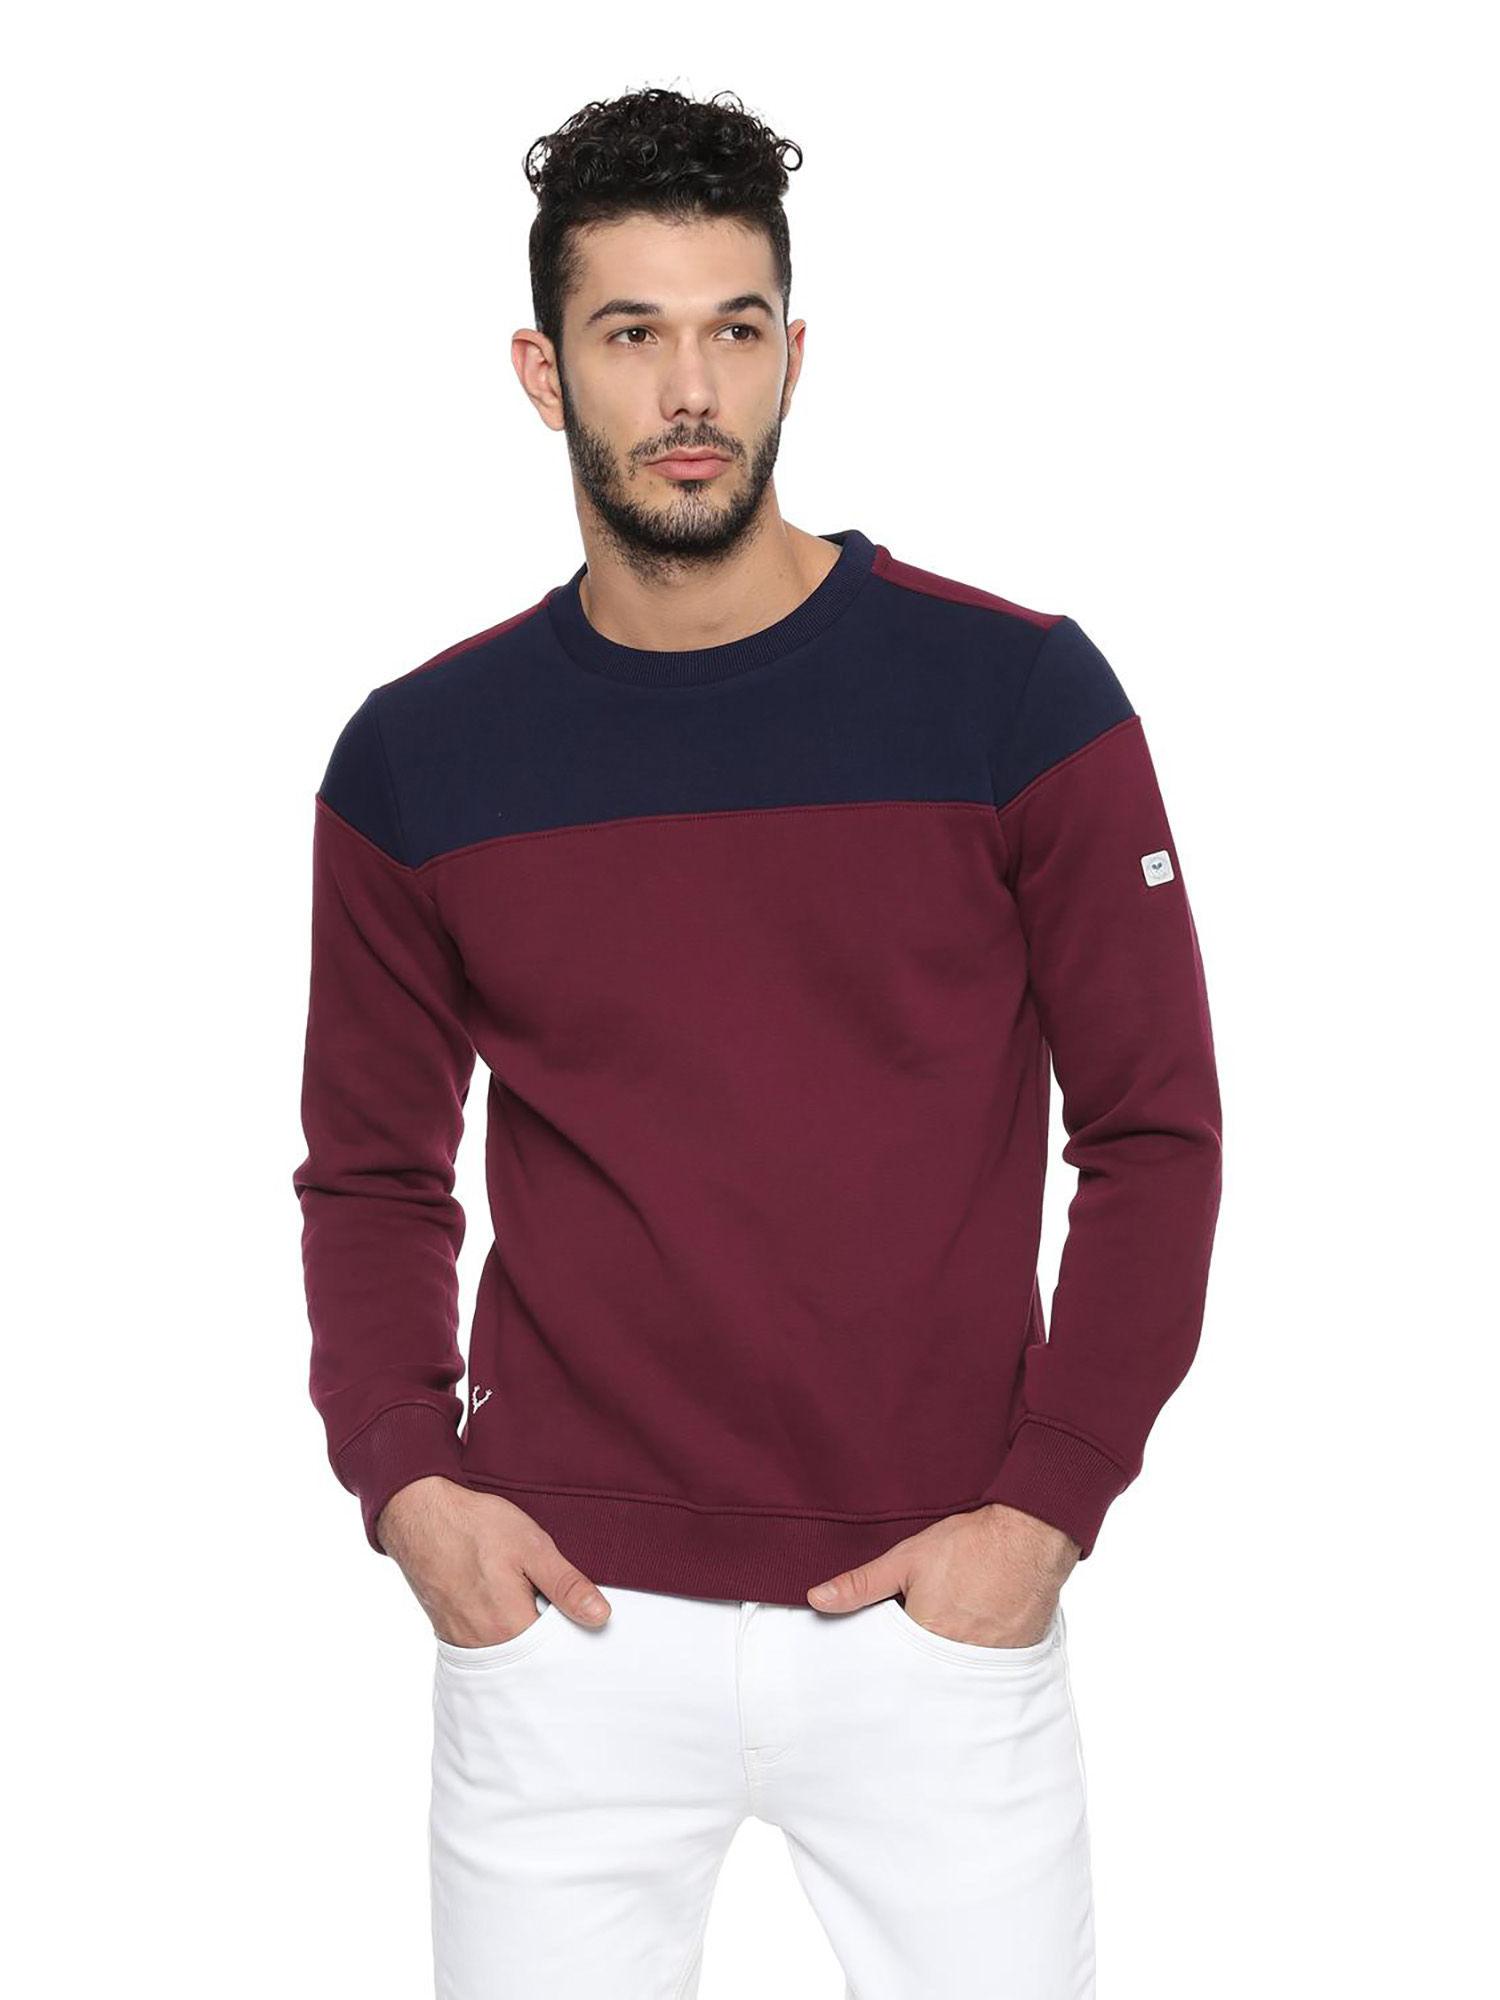 maroon-wimbledon-sweatshirt